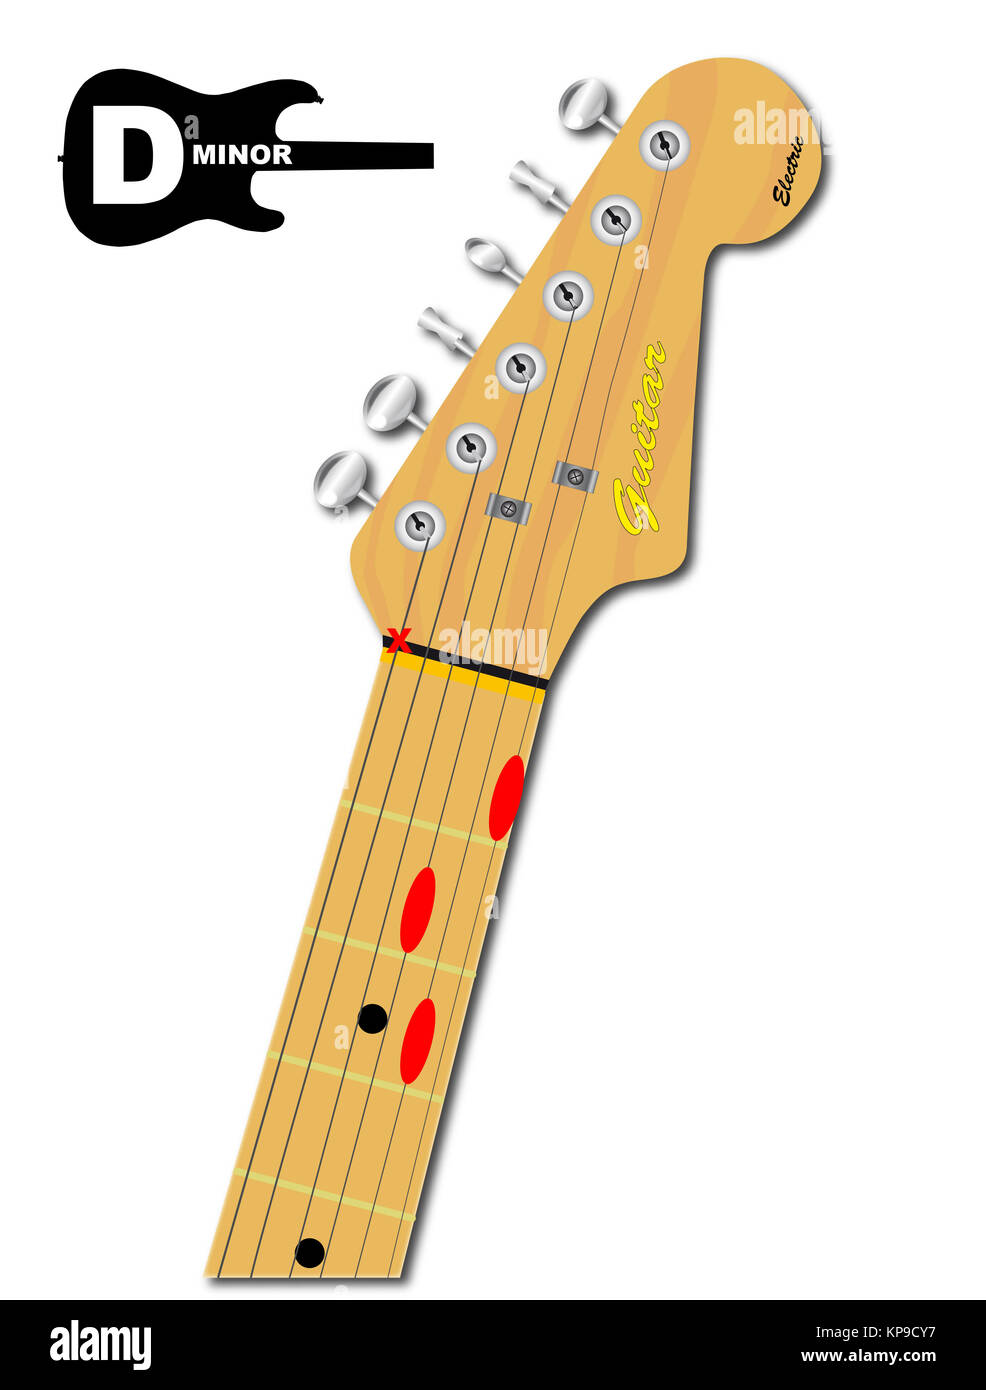 La guitarra acorde de Re menor Fotografía de stock - Alamy